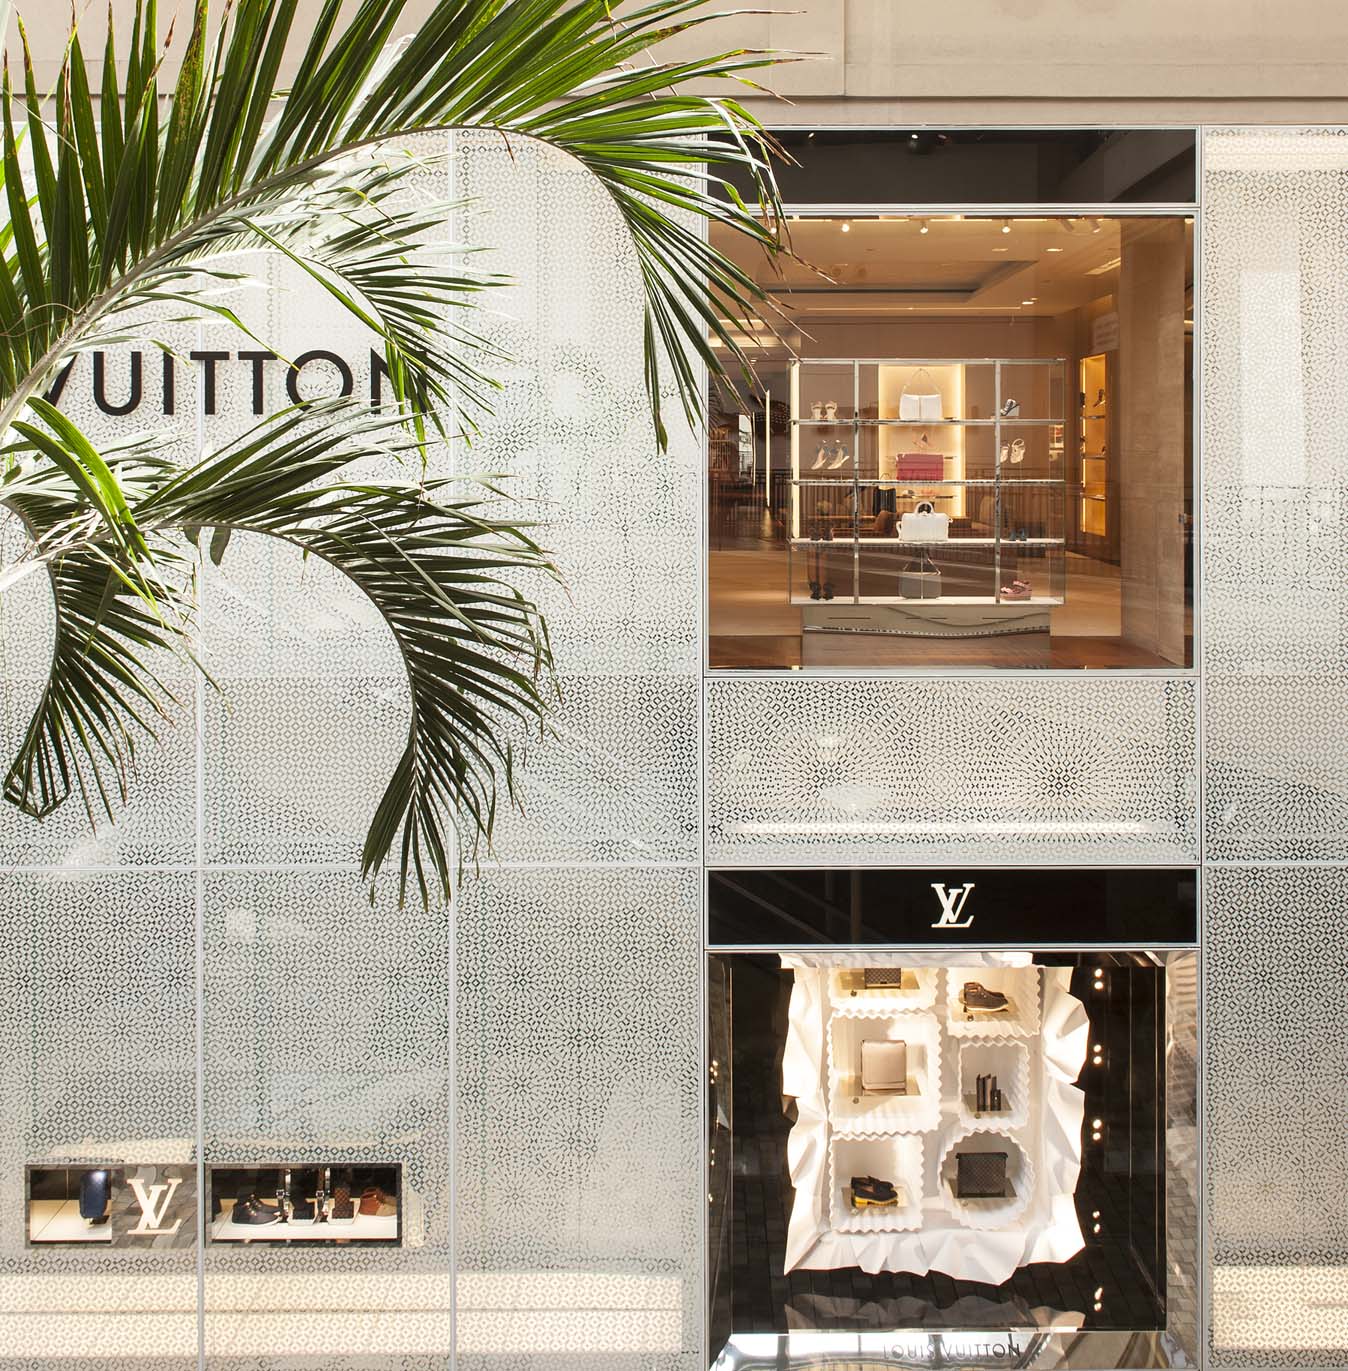 Louis Vuitton - Ala Moana Center